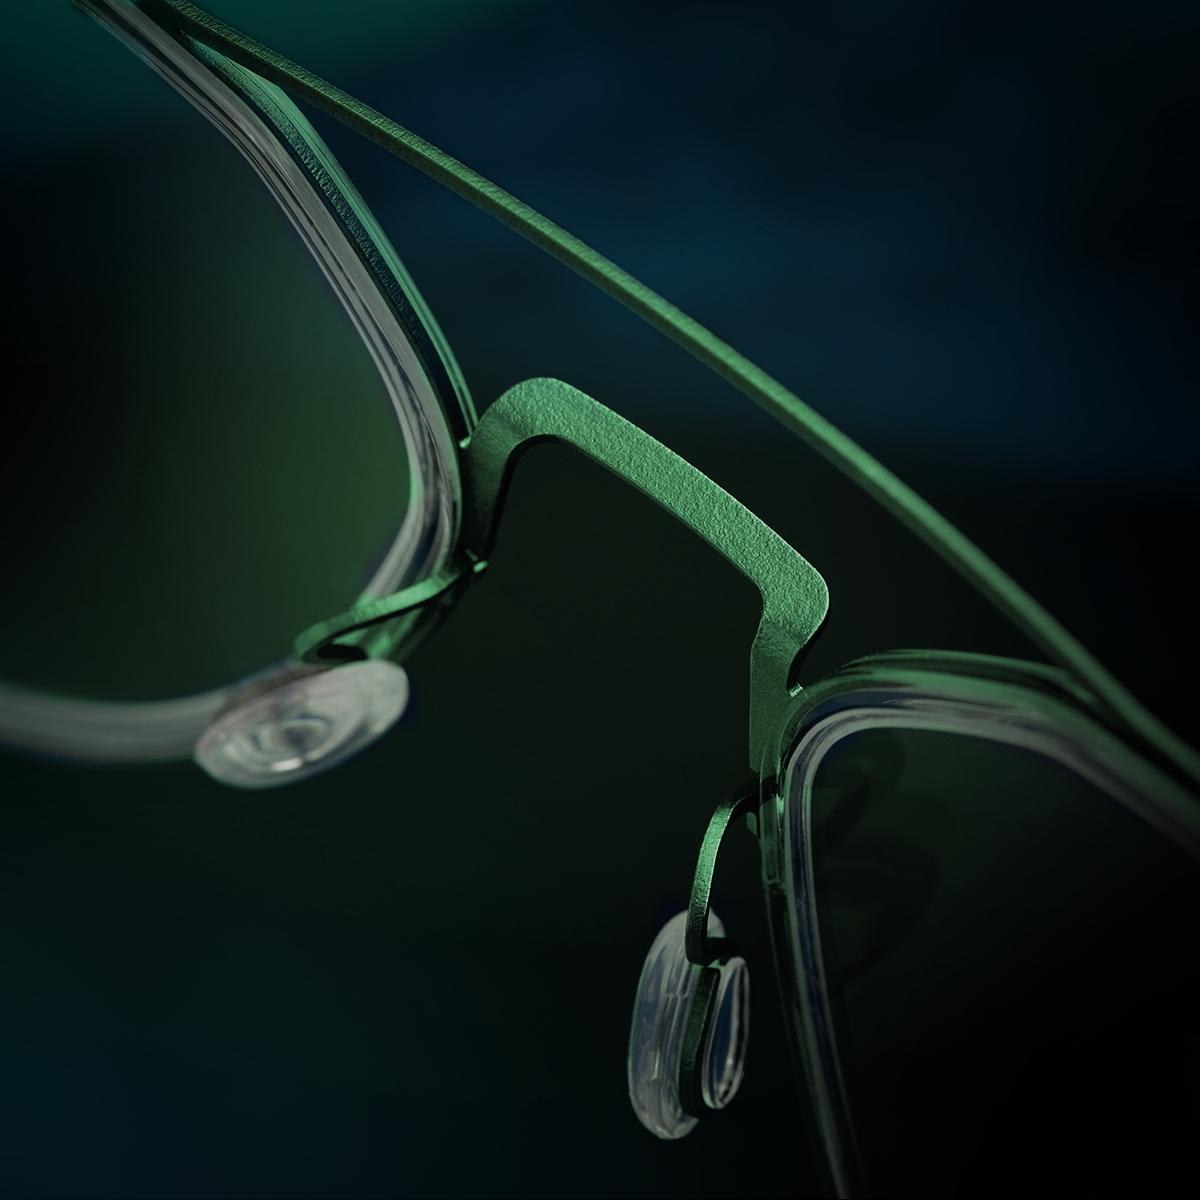 Detail of LINDBERG strip titanium 9745 117 titanium nose bridge of aviator shape glasses in green colour